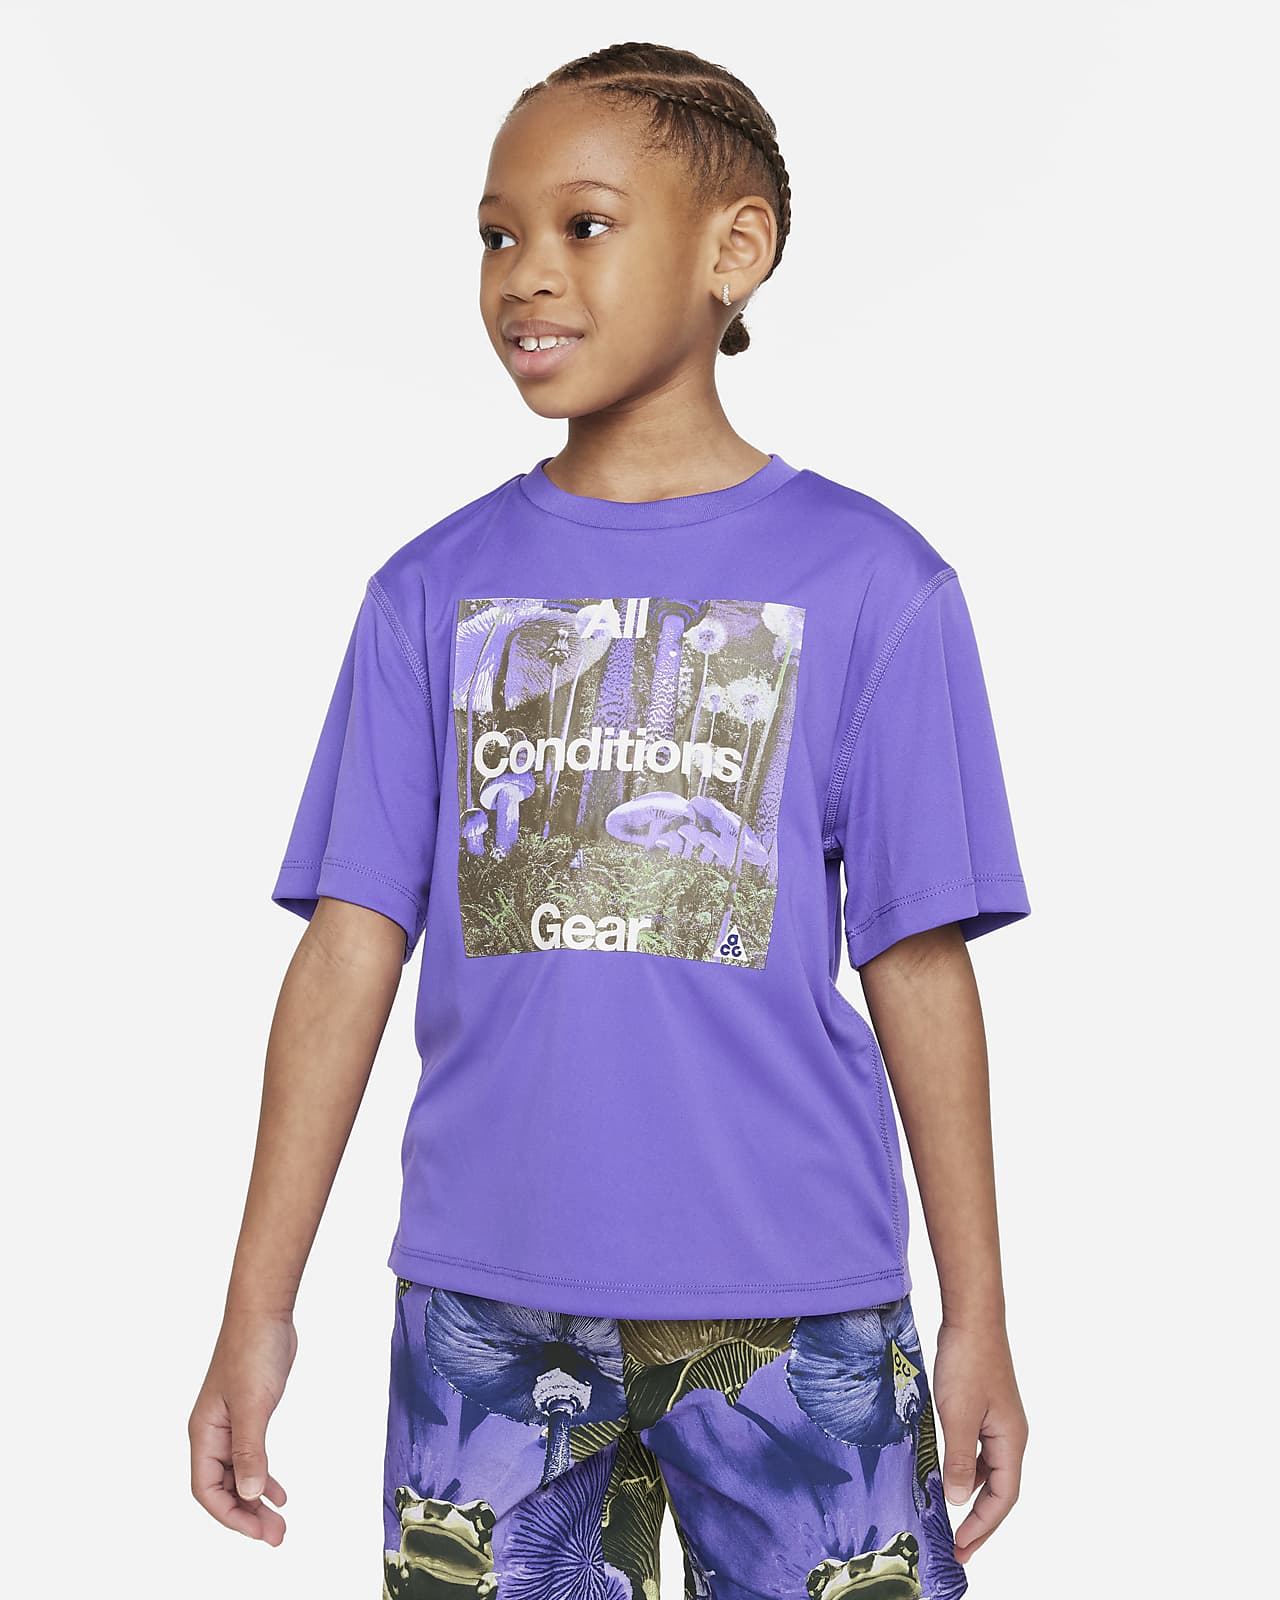 Udržitelné funkční tričko UPF Dri-FIT Nike ACG s grafickým motivem pro malé děti